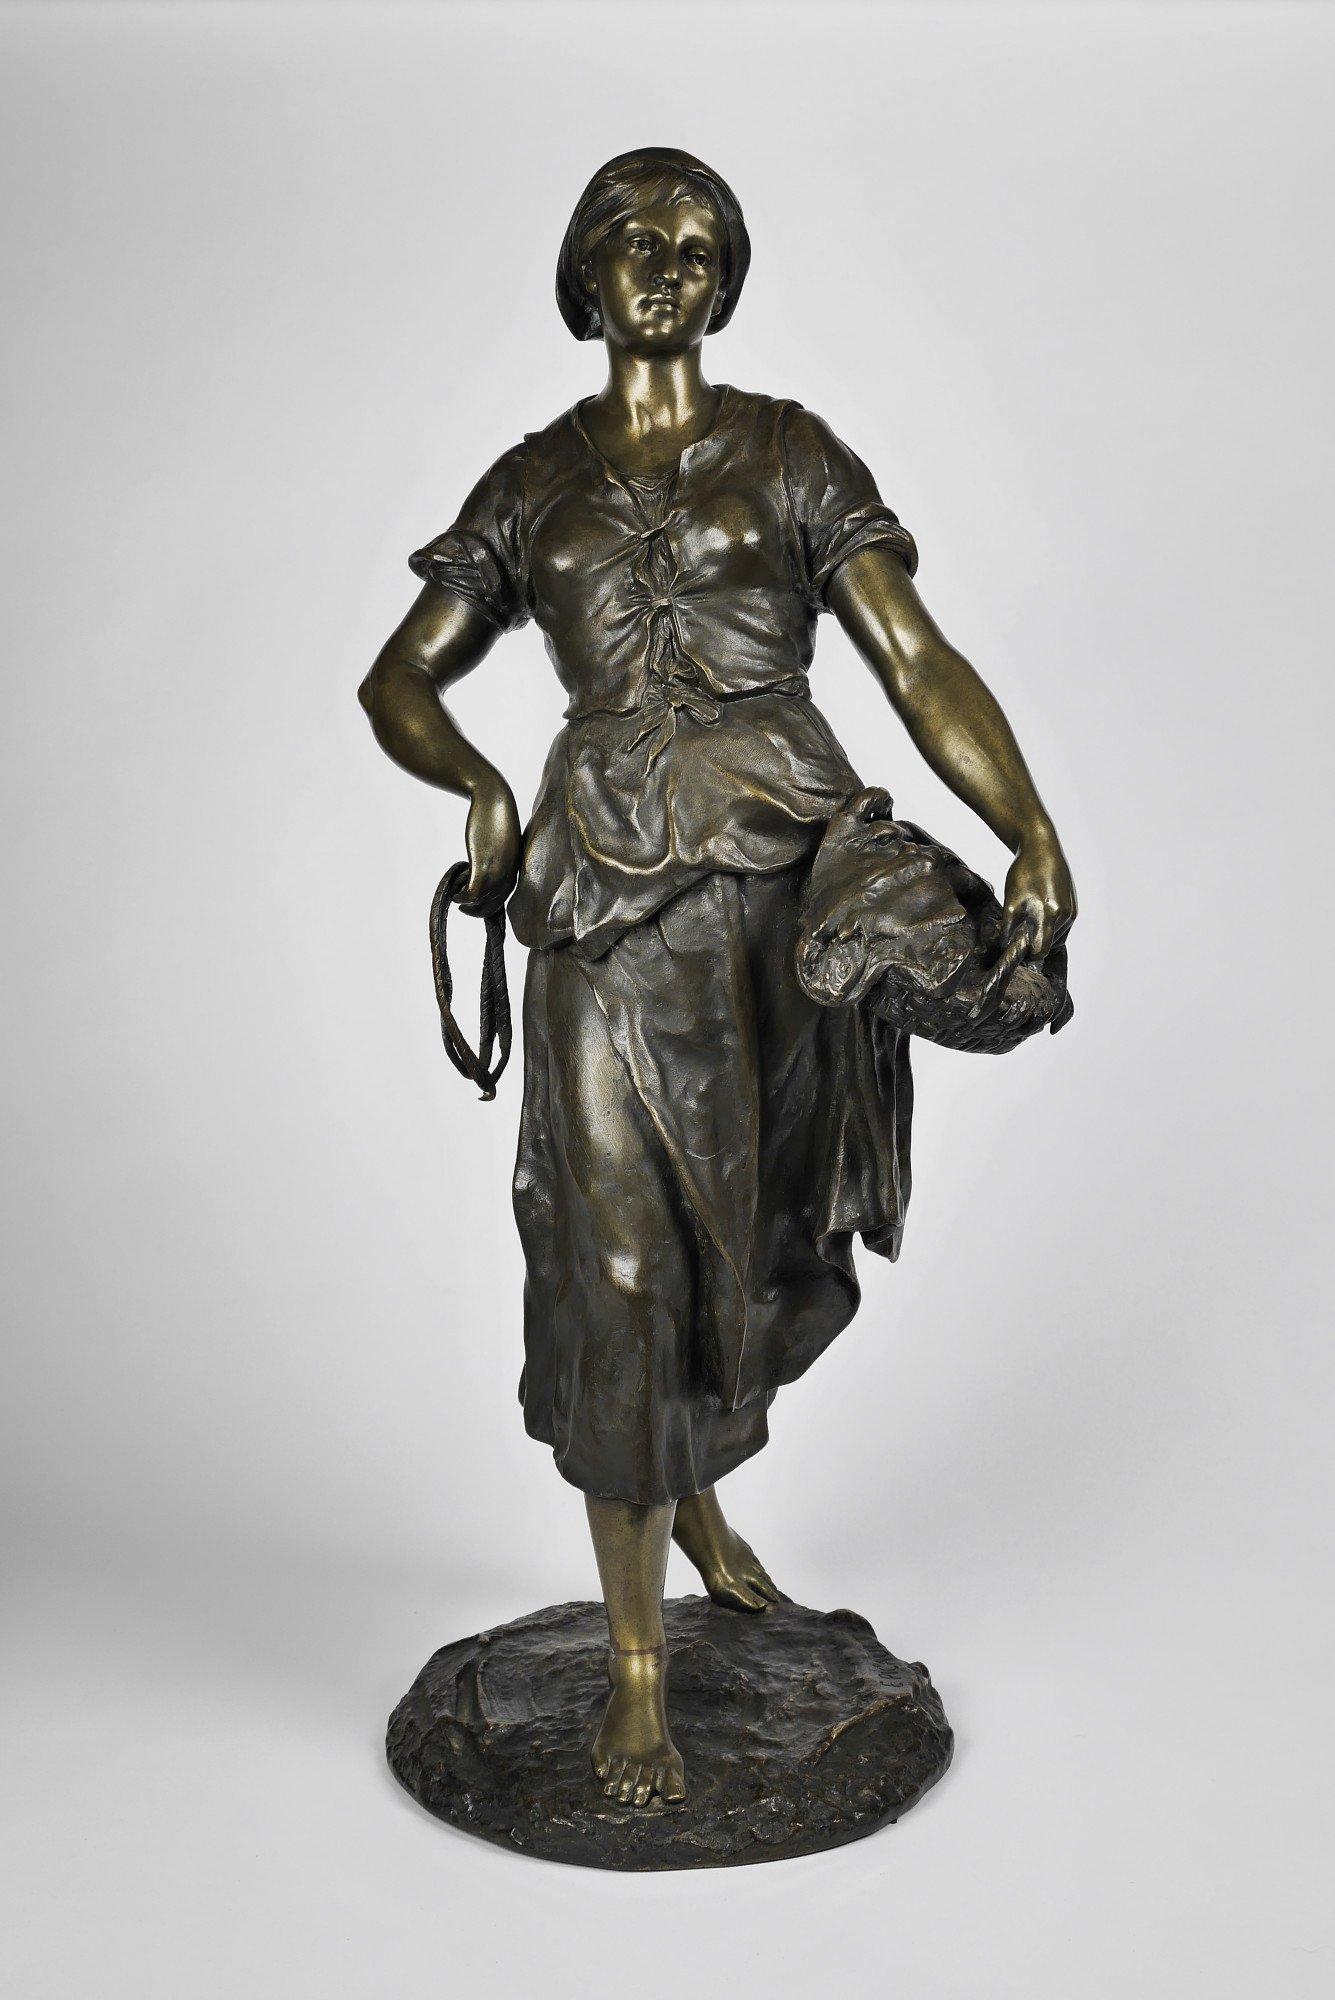 Émile Louis Picault Figurative Sculpture - The Fisherwoman, 19th century French bronze sculpture